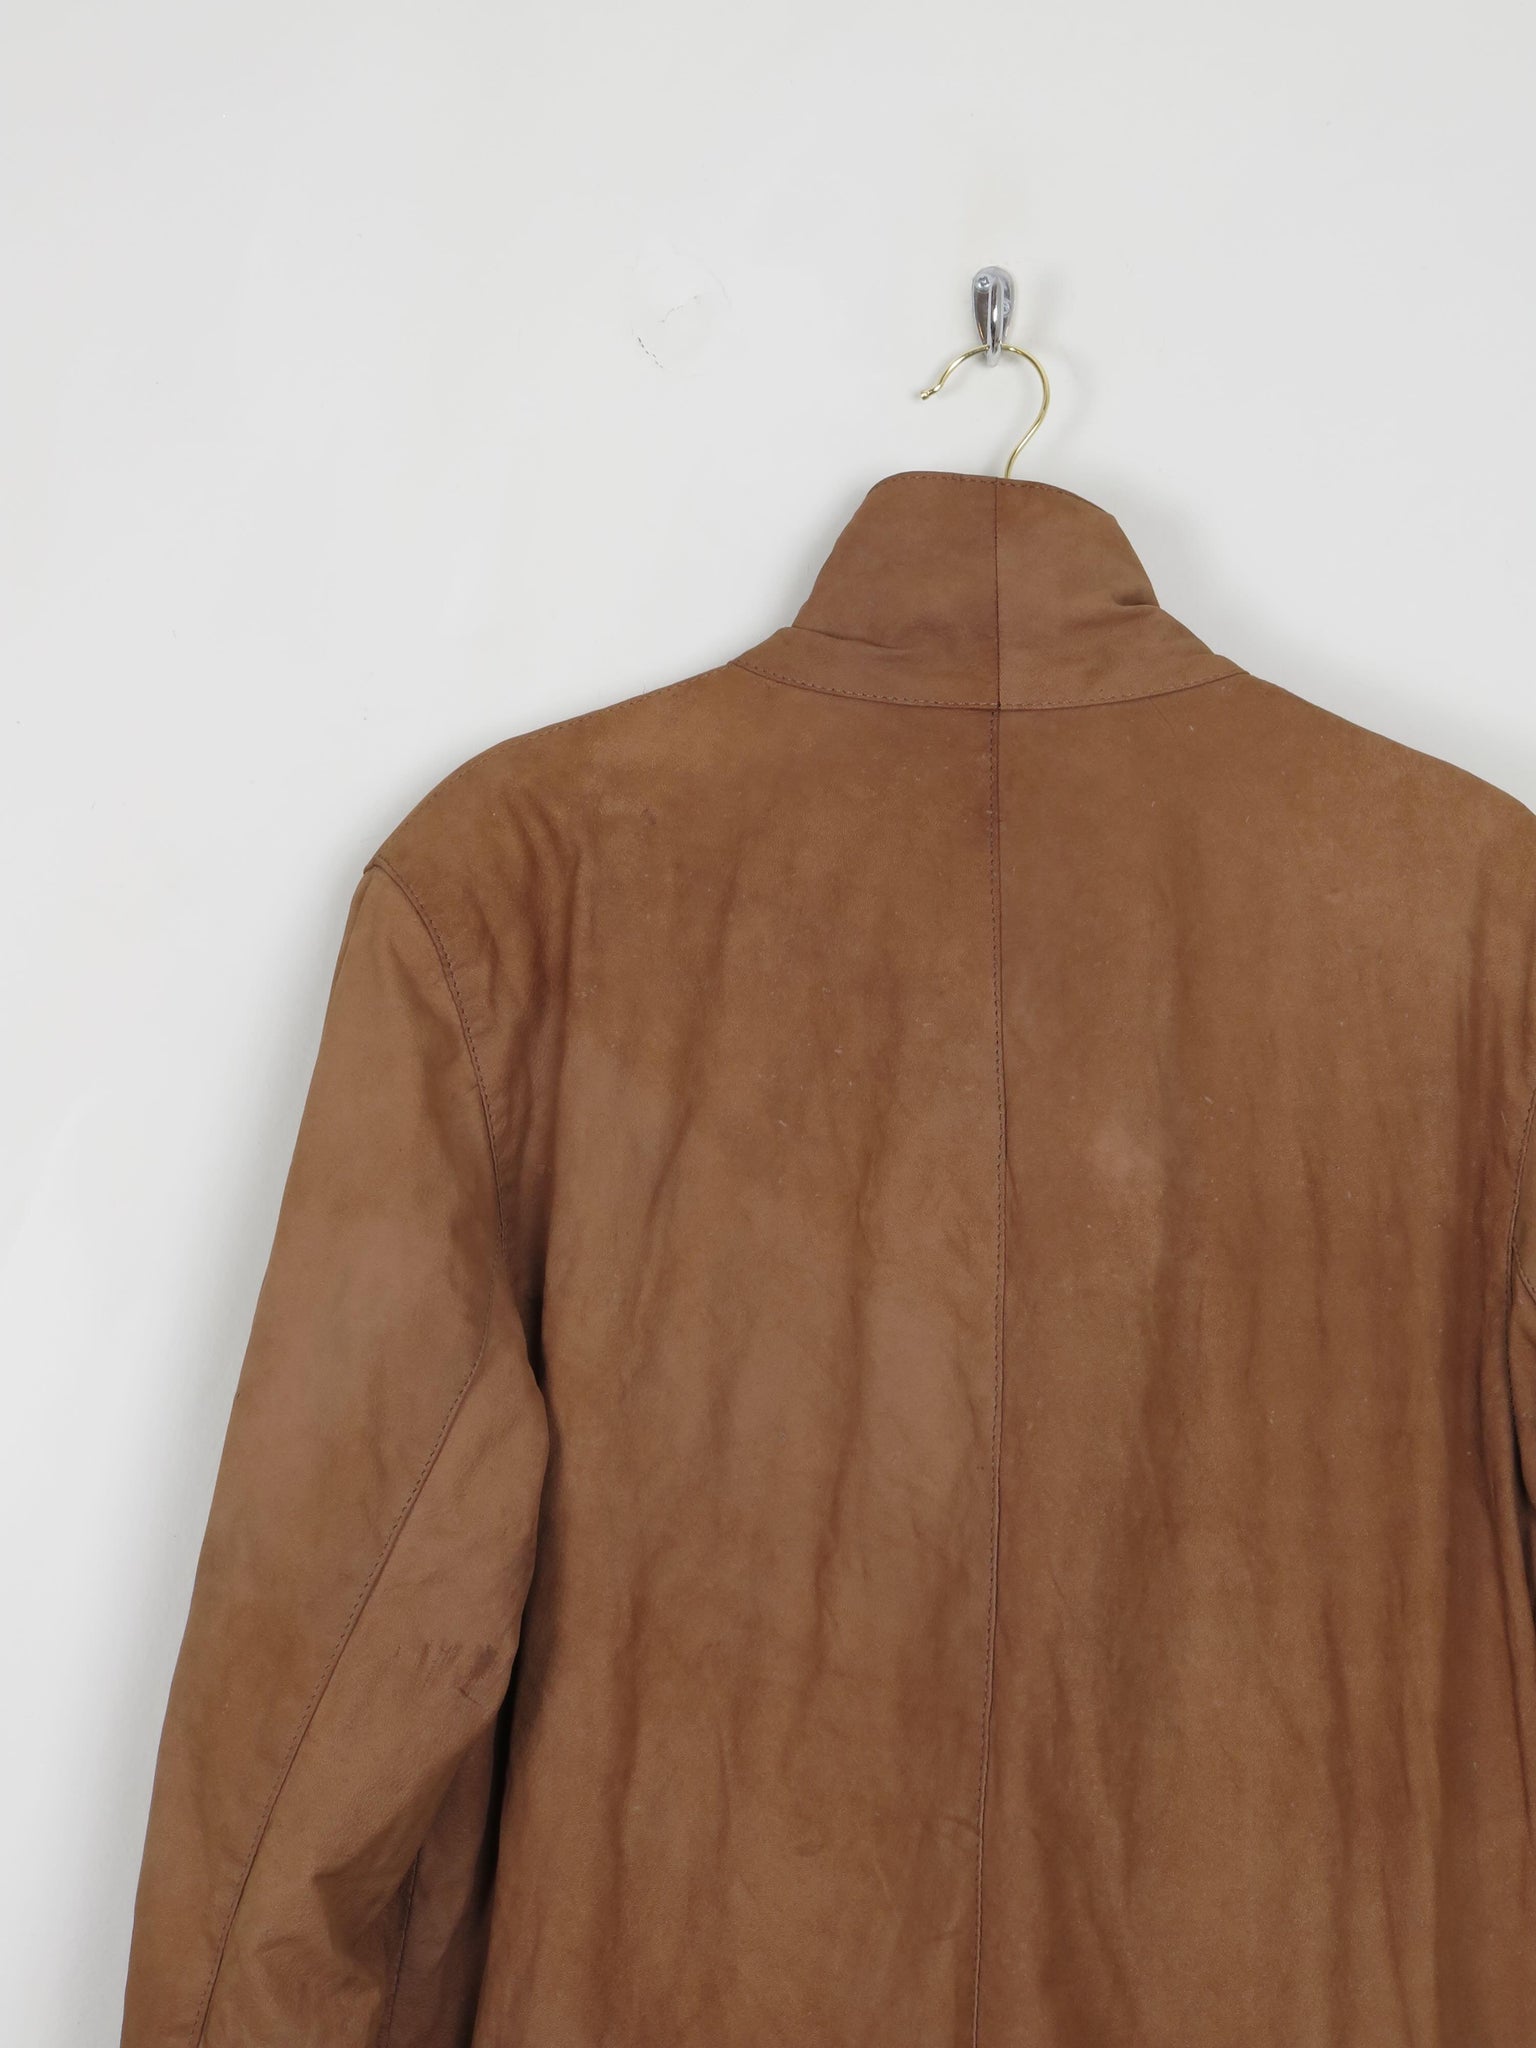 Men's Rust Suede Vintage Jacket With Zip M - The Harlequin